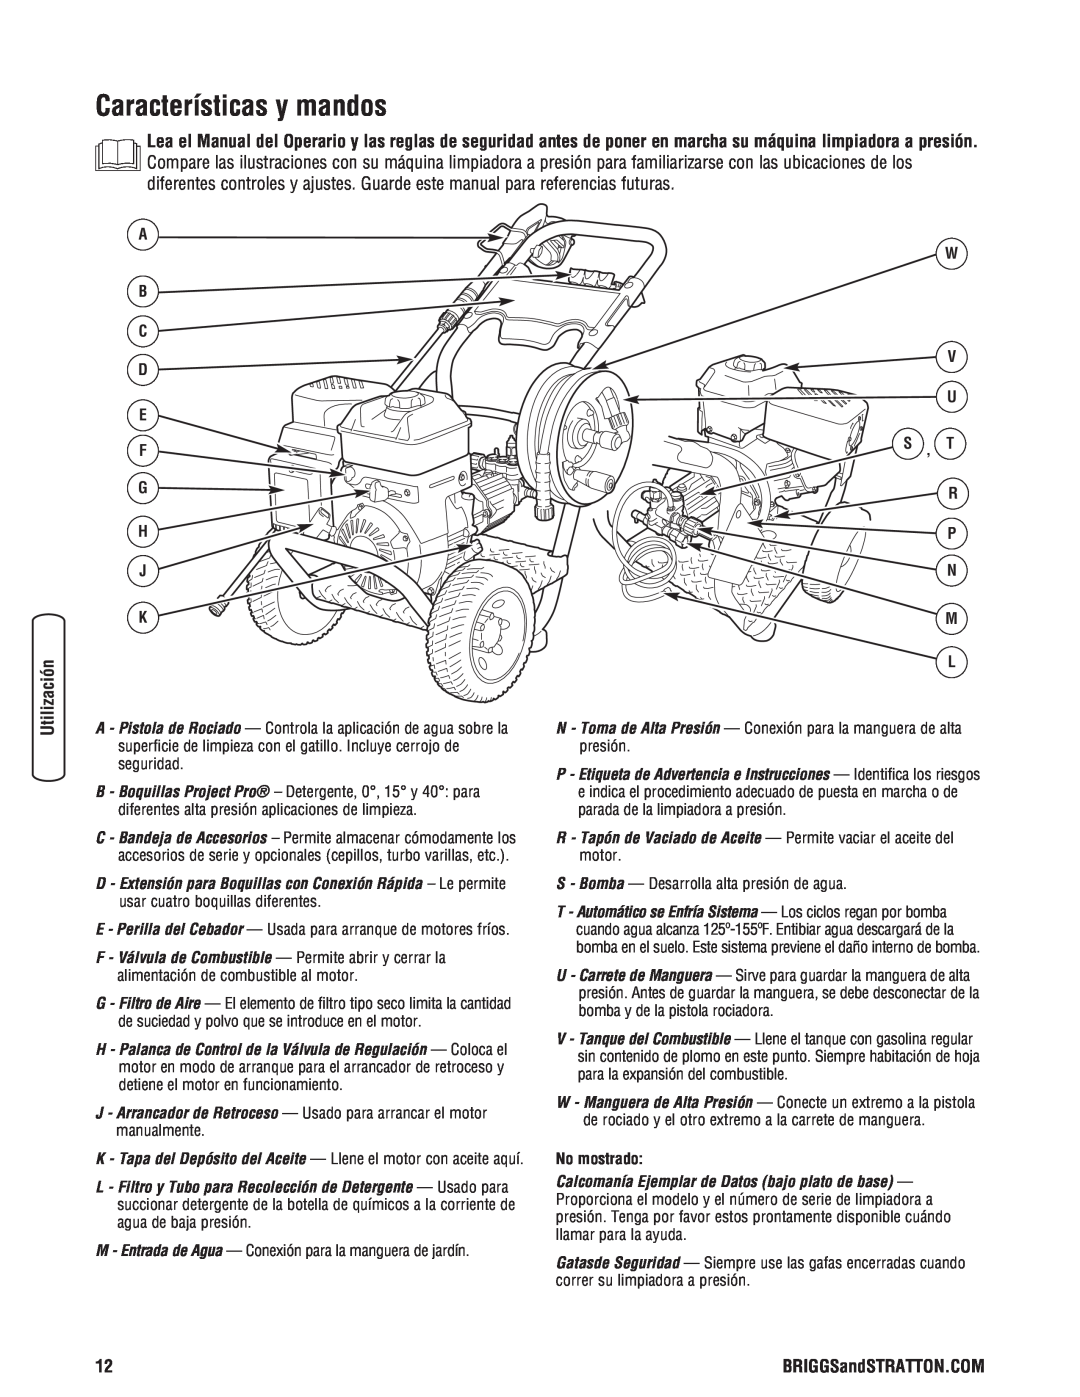 Briggs & Stratton 020364-0 manual Características y mandos, A B C D E F G H J K, W V U S , T R P N M L, No mostrado 